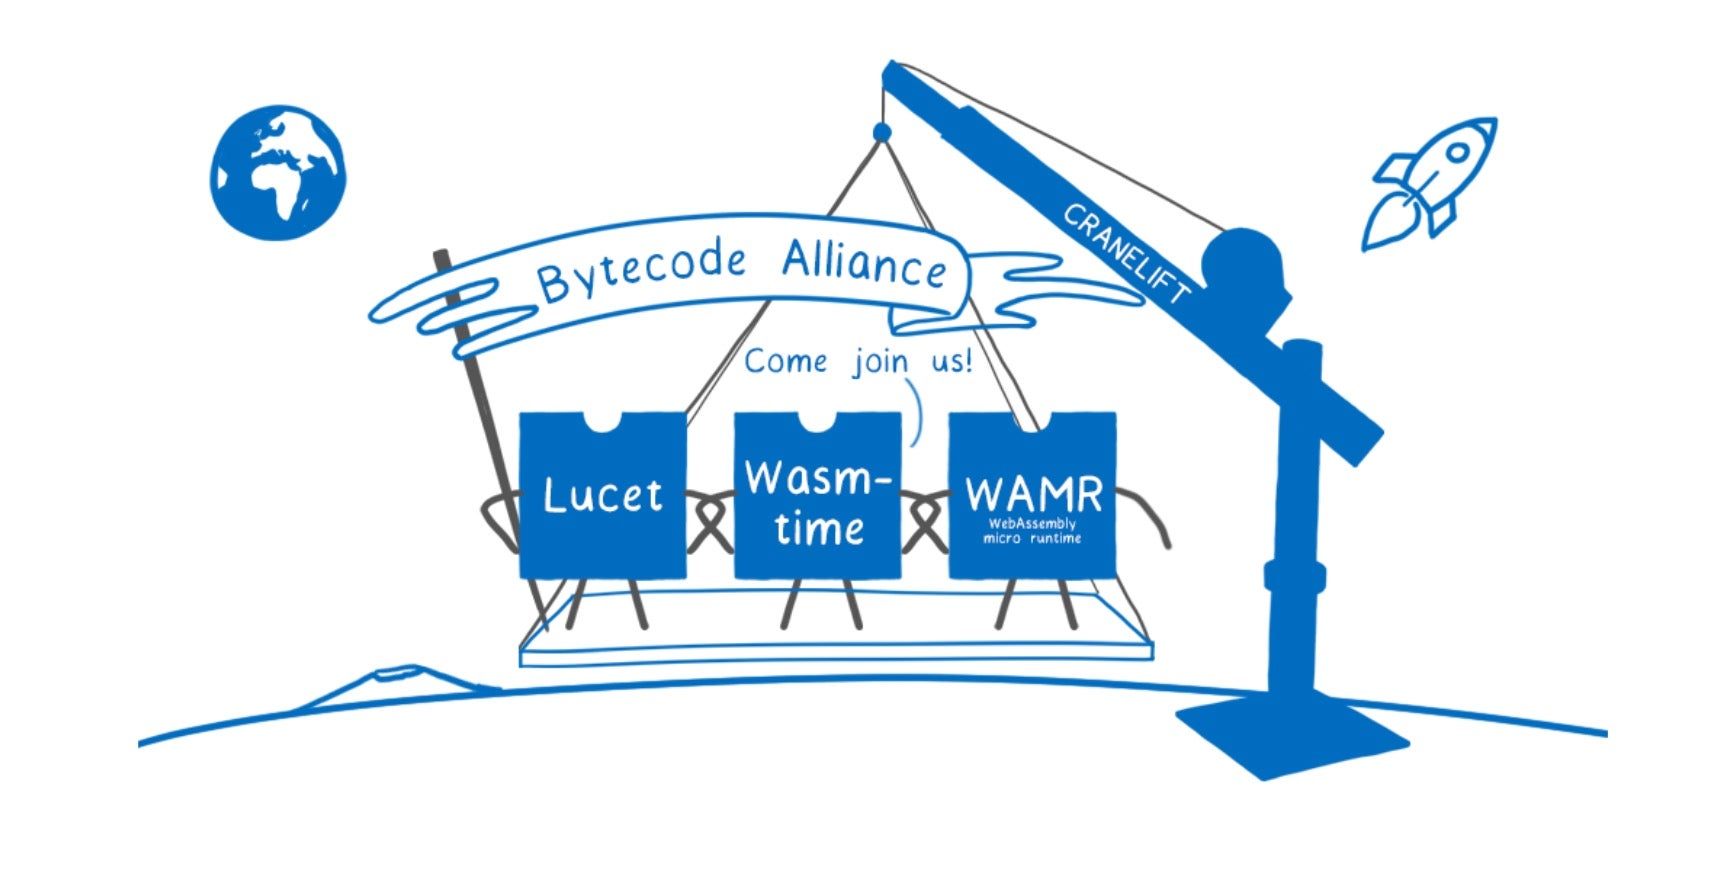 image of bytecode alliance